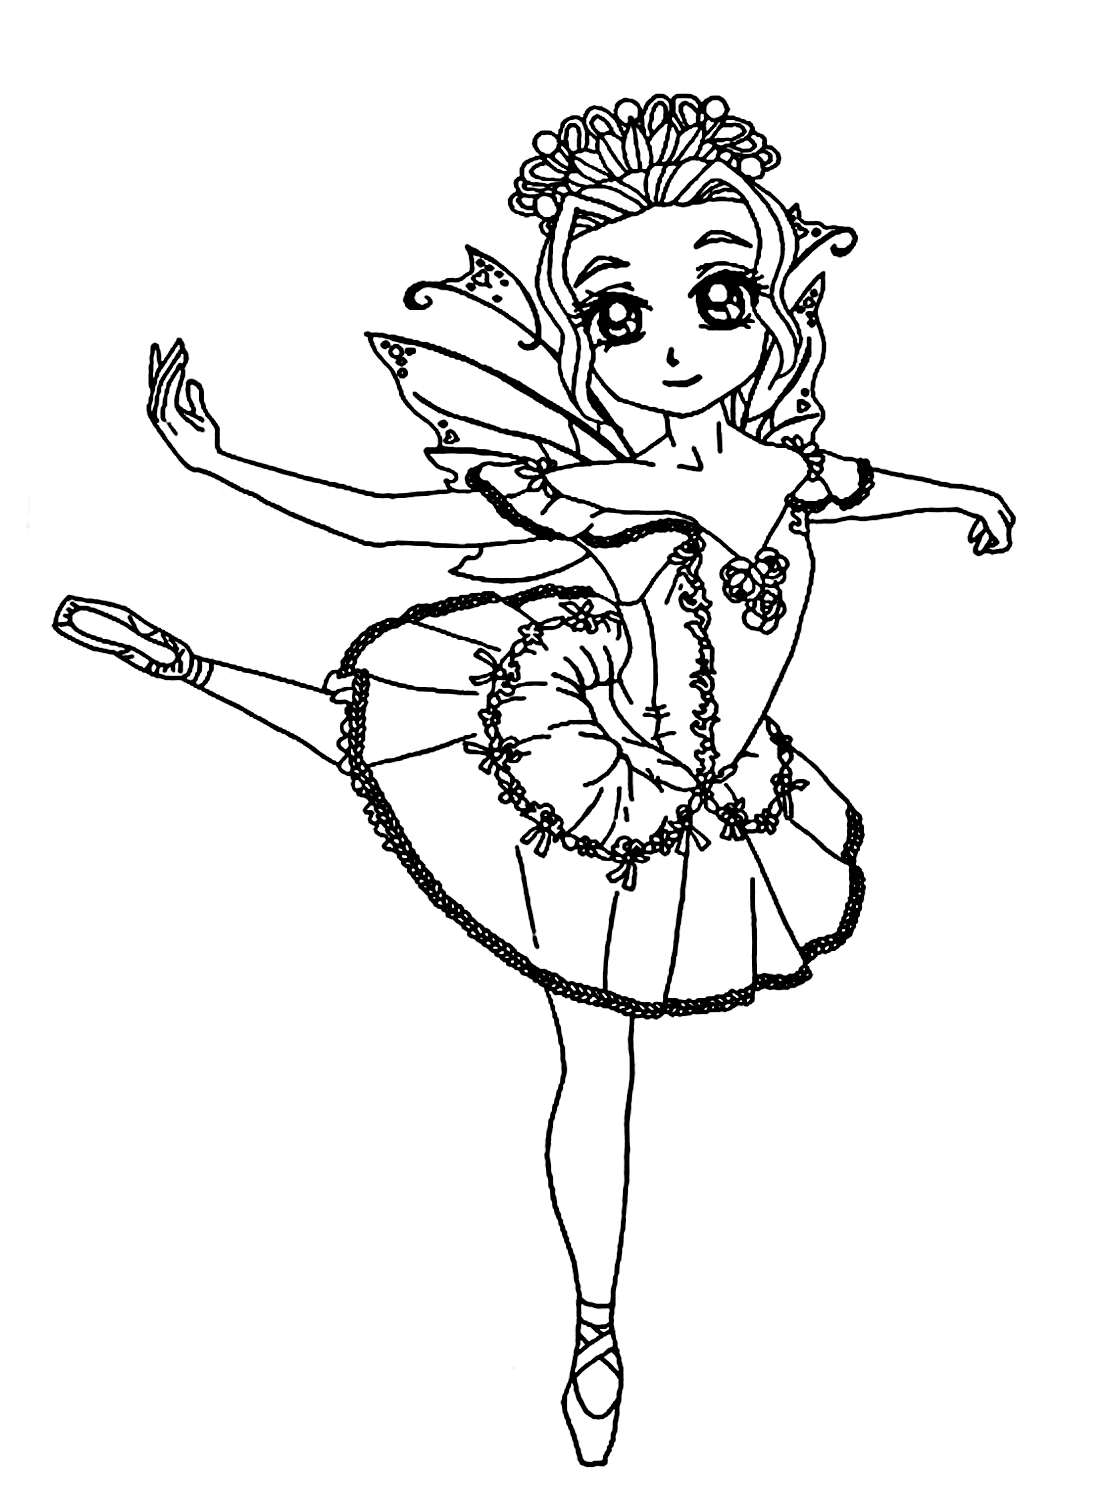 Ein kleines Ballerina-Mädchenbild von Ballerina